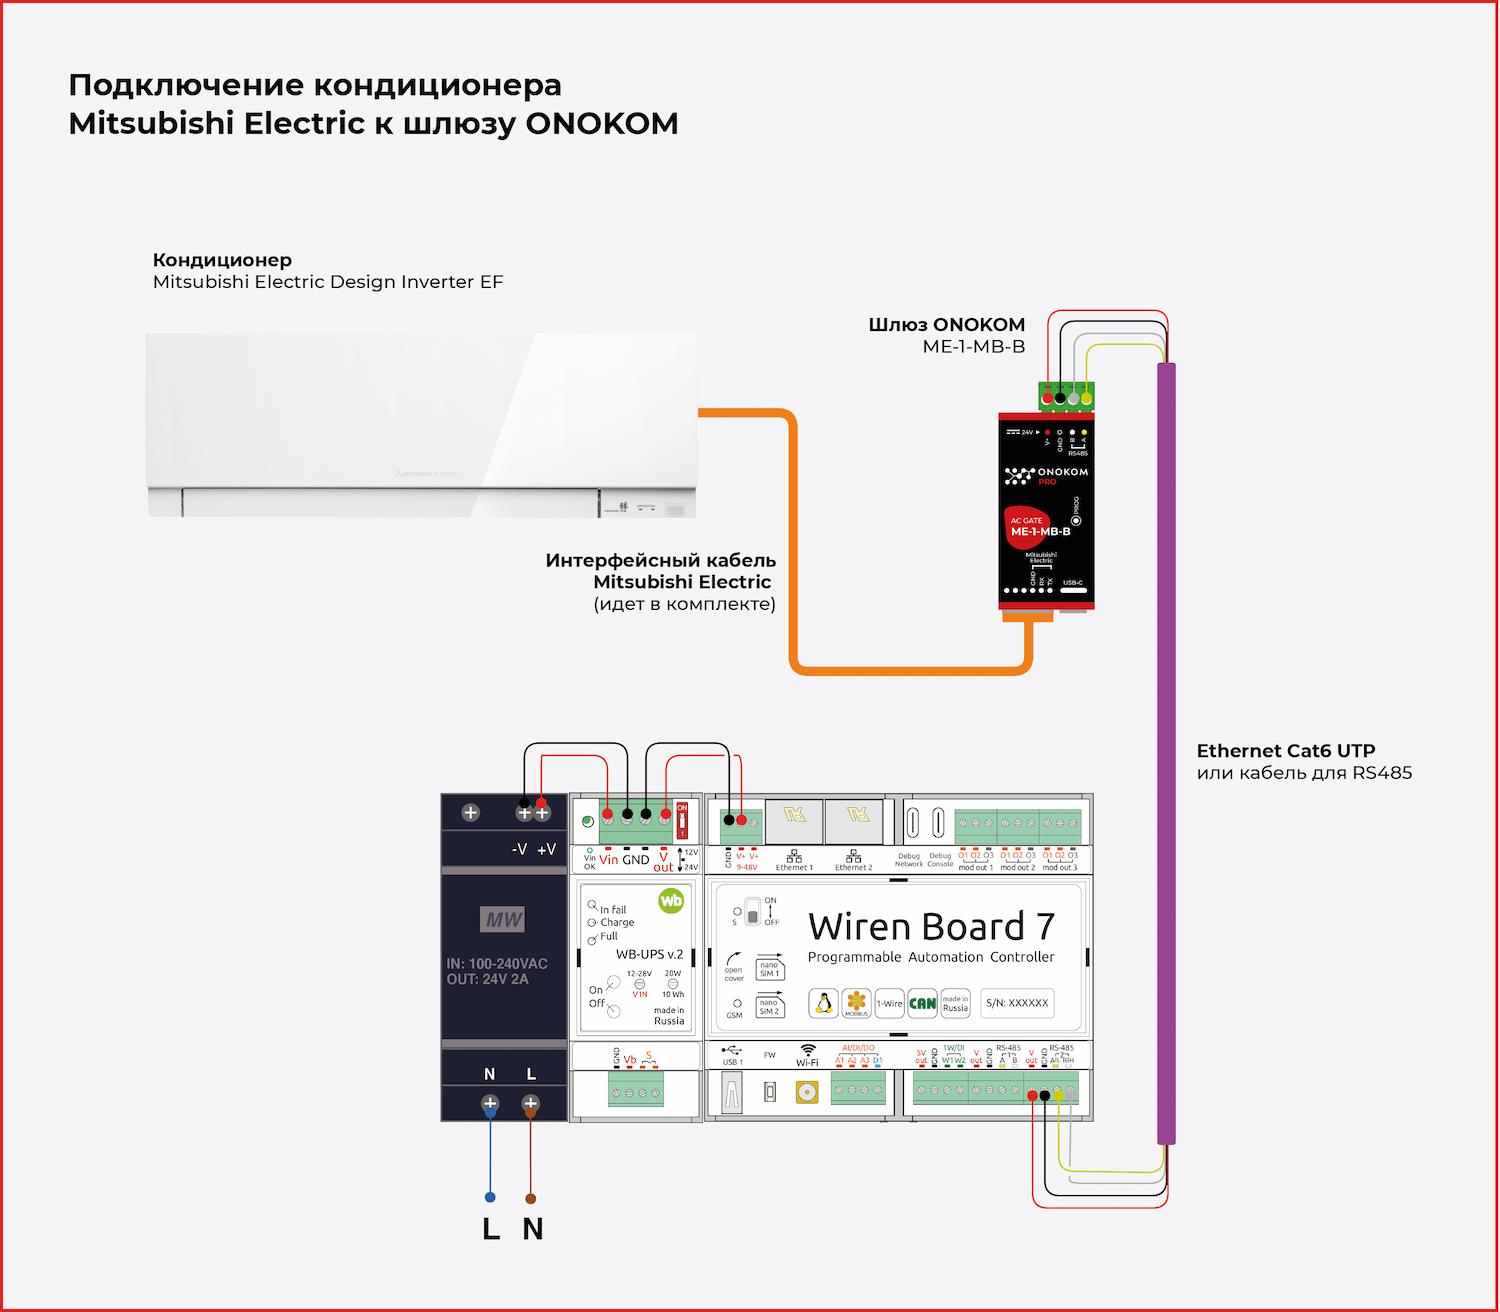 Схема подключения кондиционера Mitsubishi Electric Design Inverter EF MSZ-EF25VGKW к контроллеру WirenBoard через шлюз ONOKOM ME-1-MB-B